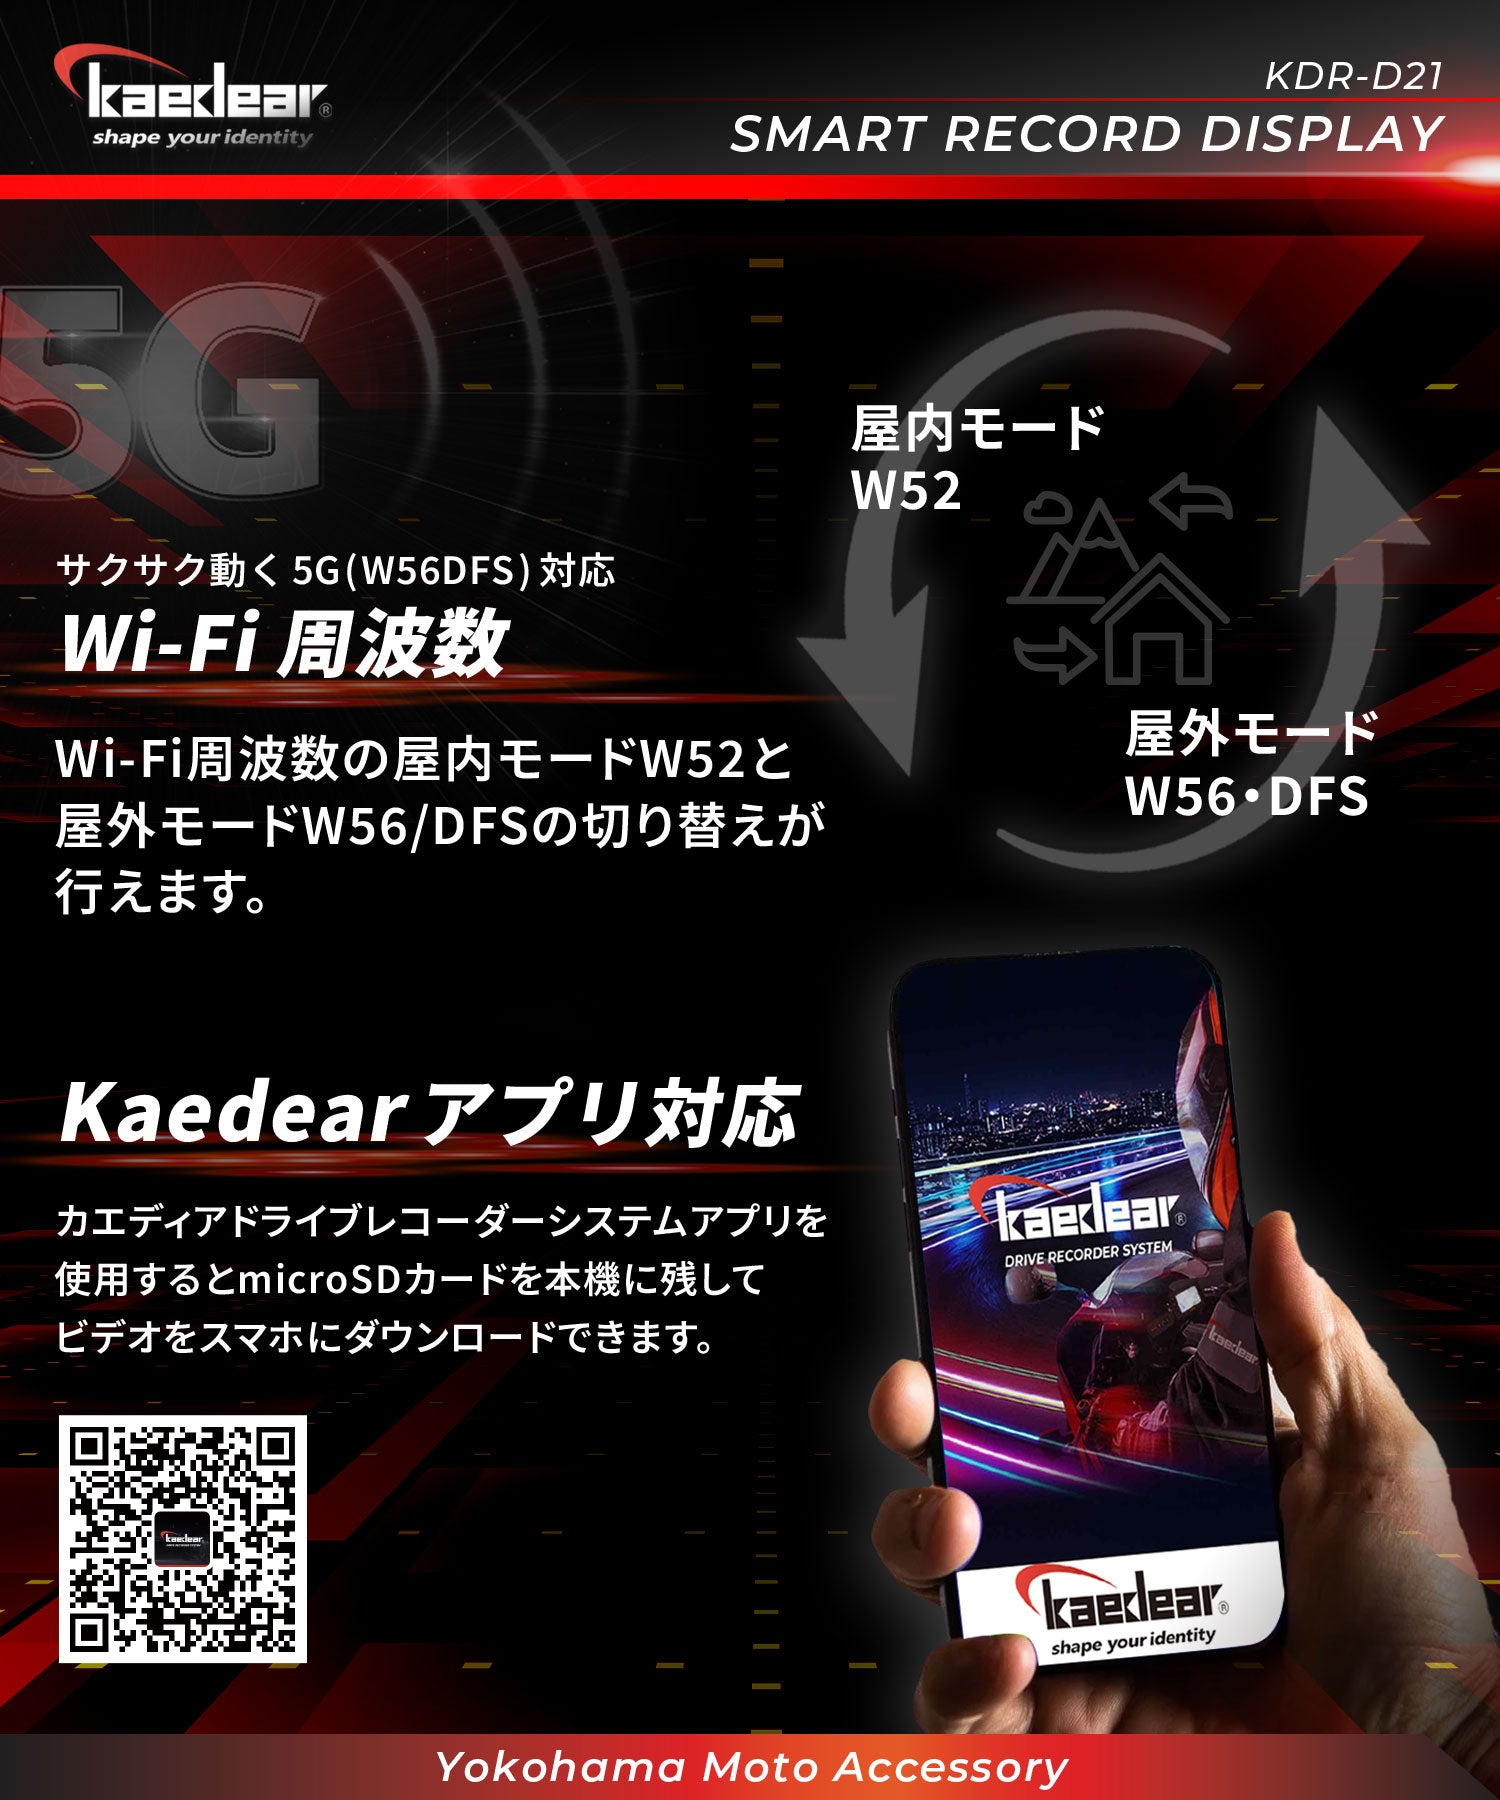 And【新発売】カエディア スマートレコードディスプレイ KDR-D21 ドラレコ